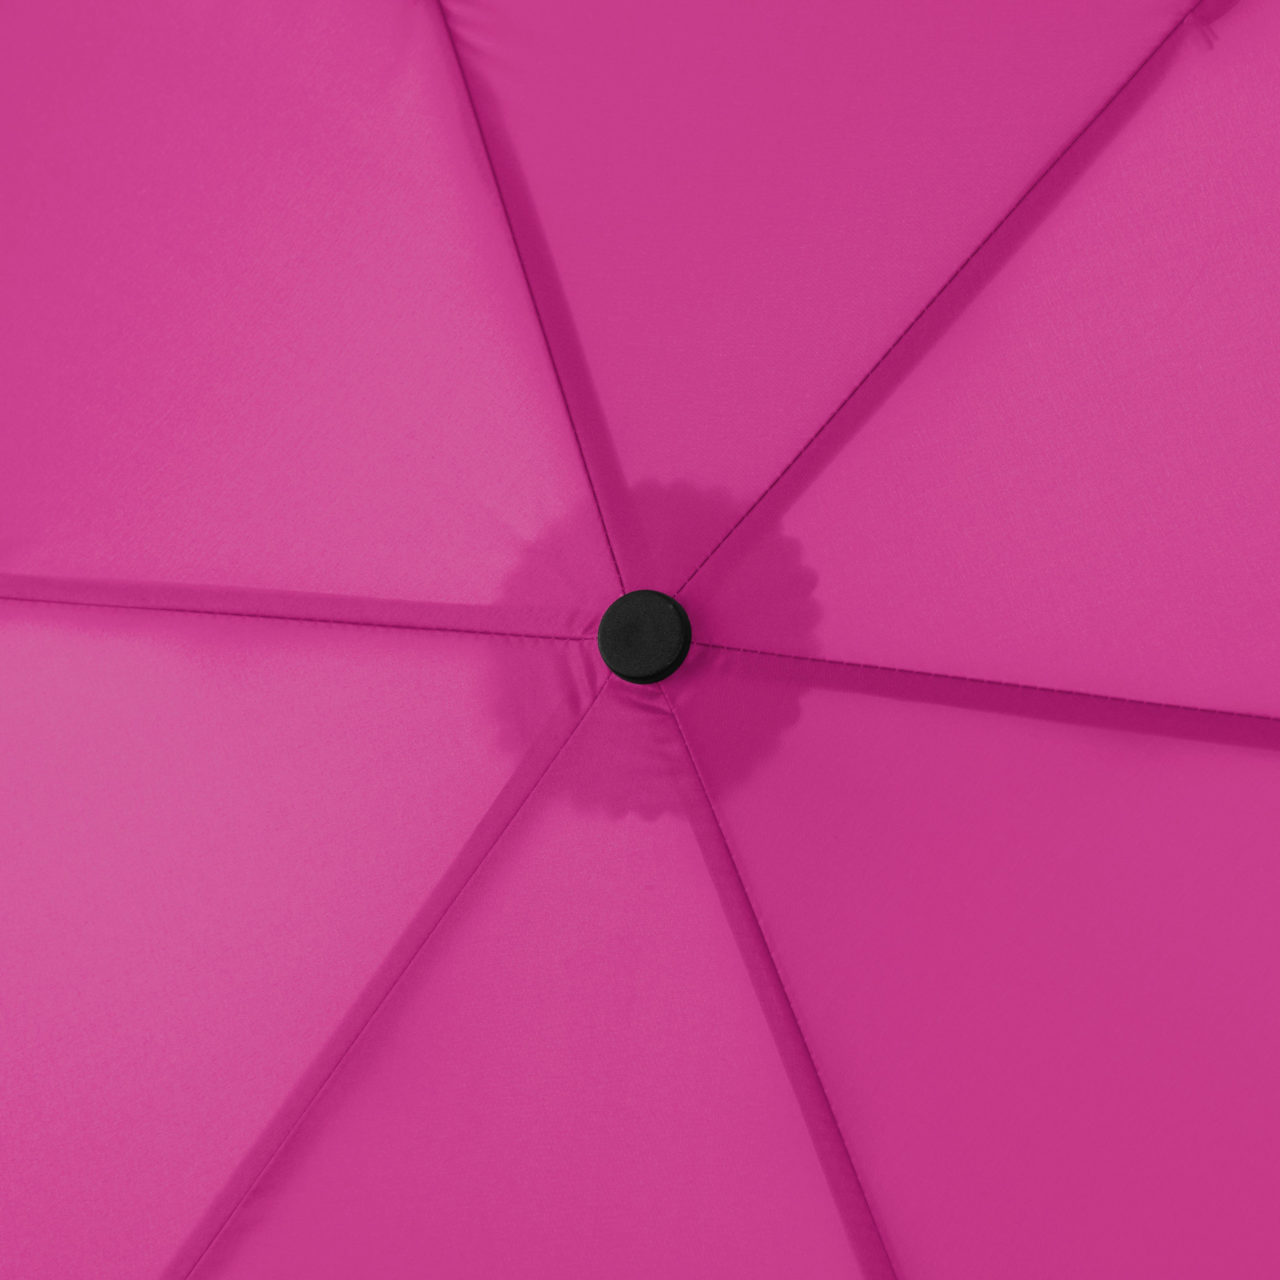 Doppler ZERO 99 Gramm Taschenschirm - fancy pink